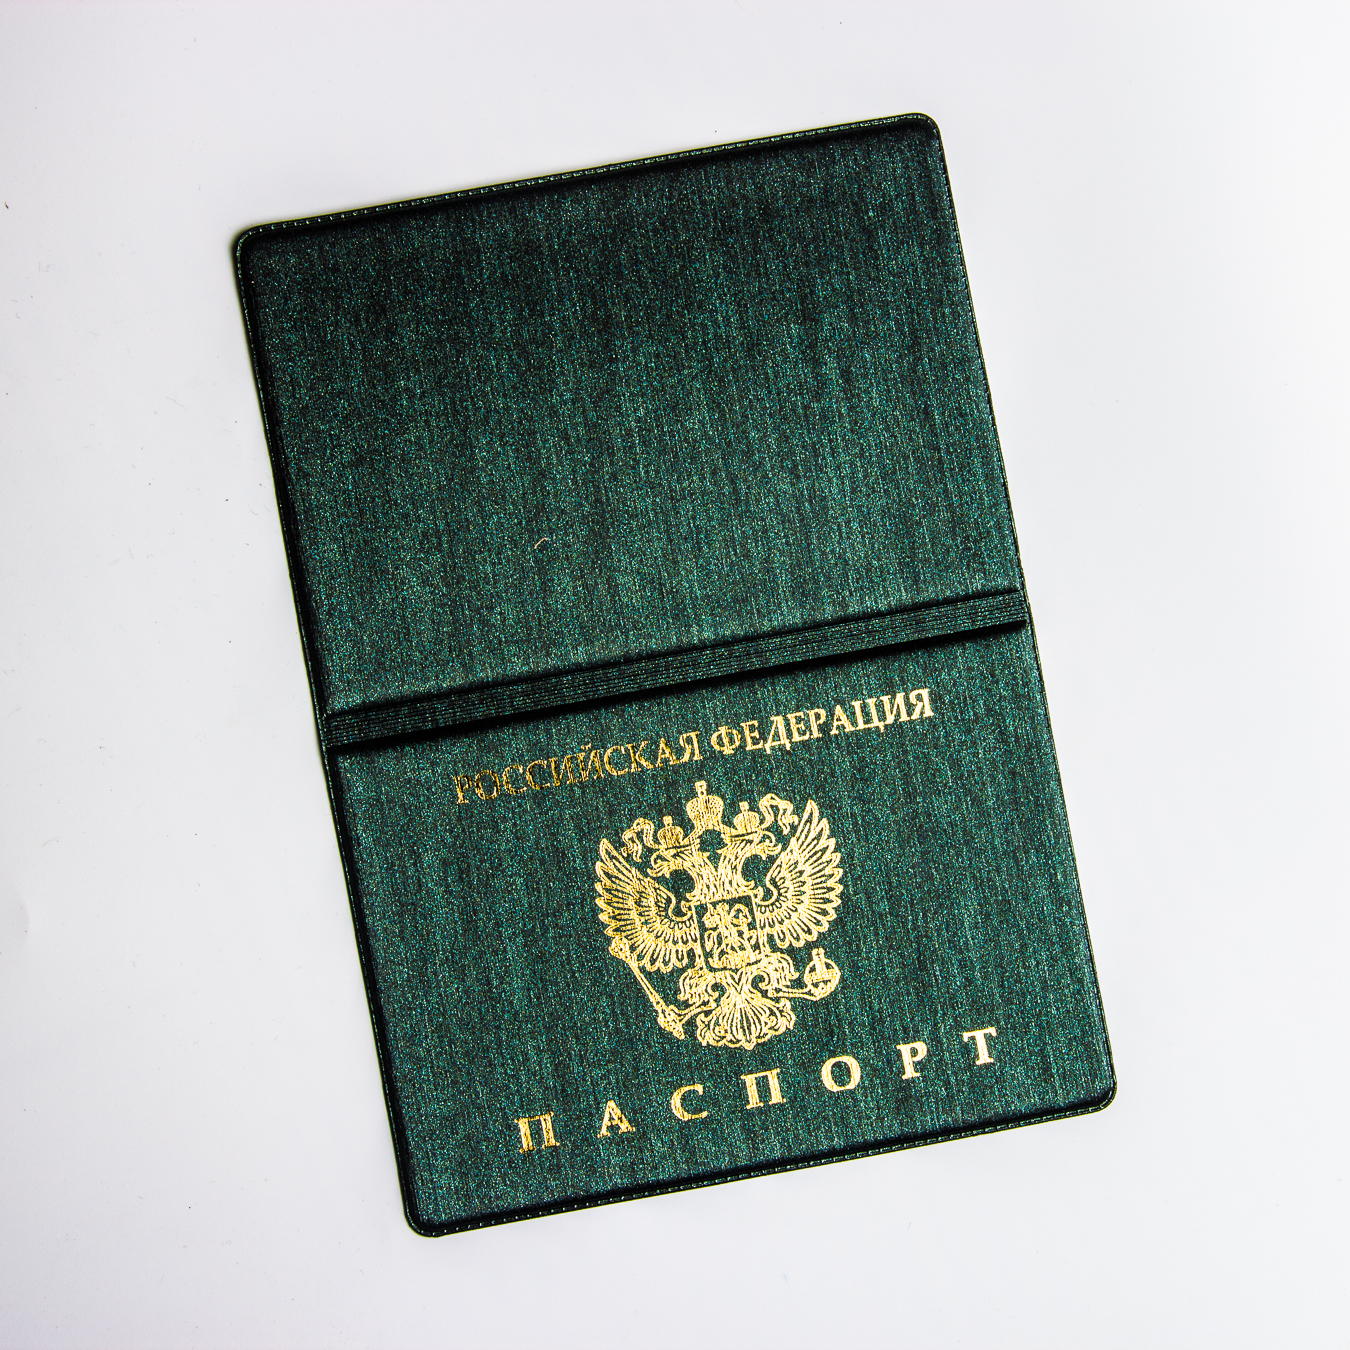 Обложка для паспорта "ГОЛЛАНДИЯ" 010527-3Г Green